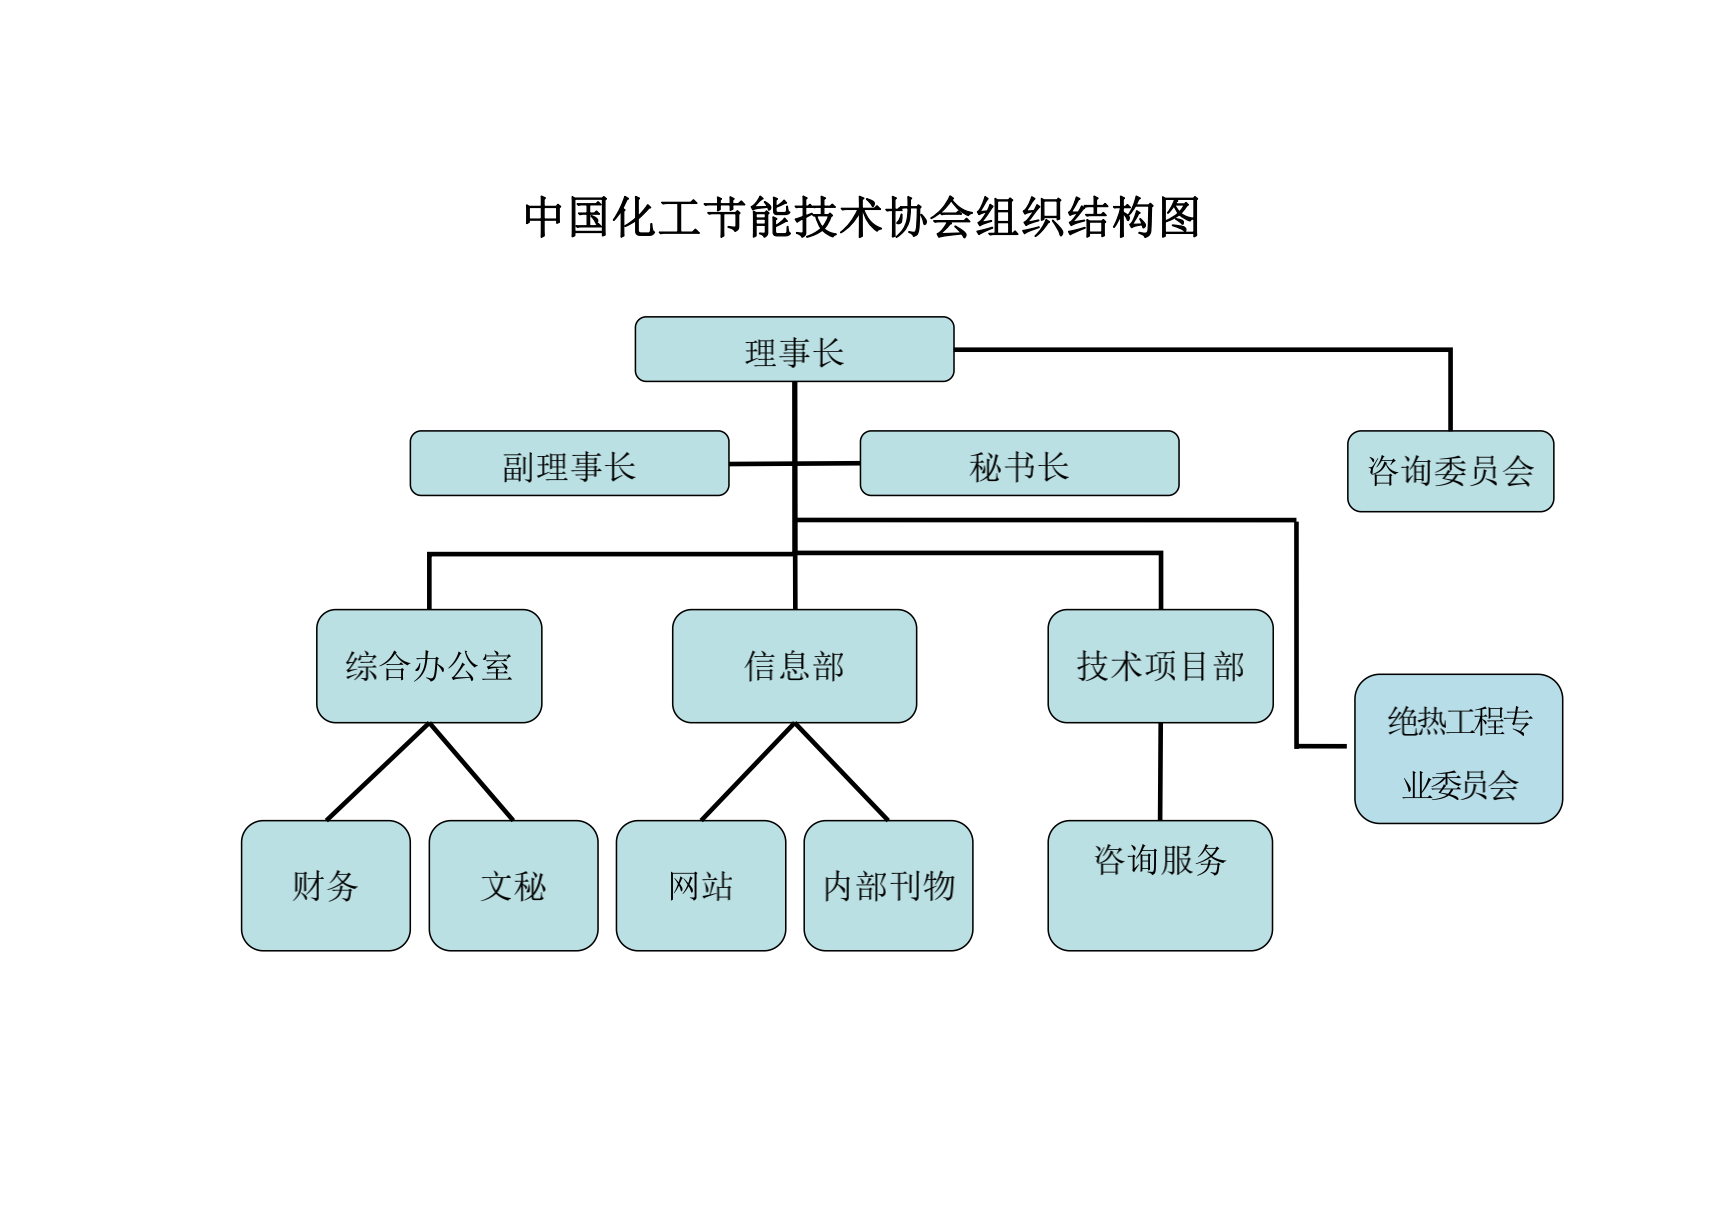 组织结构图-新_00.png